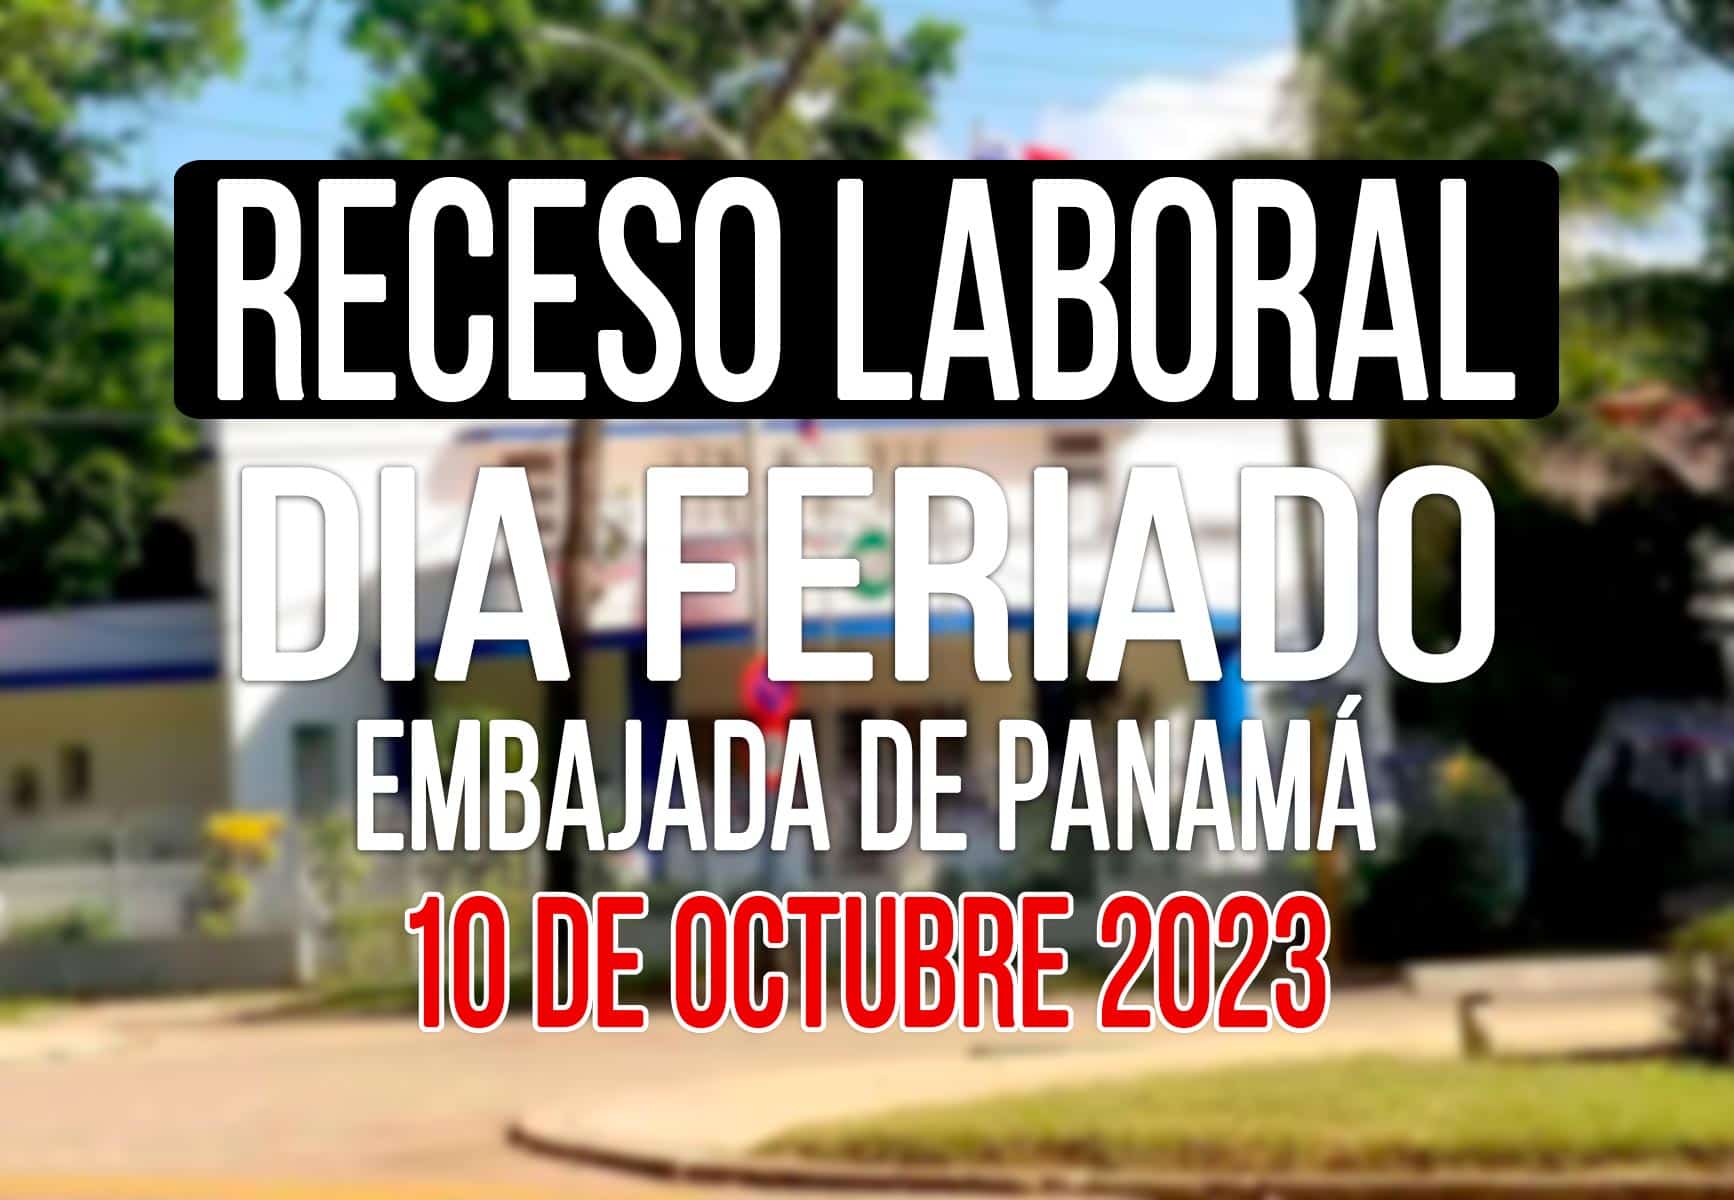 Consulado de Panamá en Cuba Anuncia Cierre por Receso Laboral